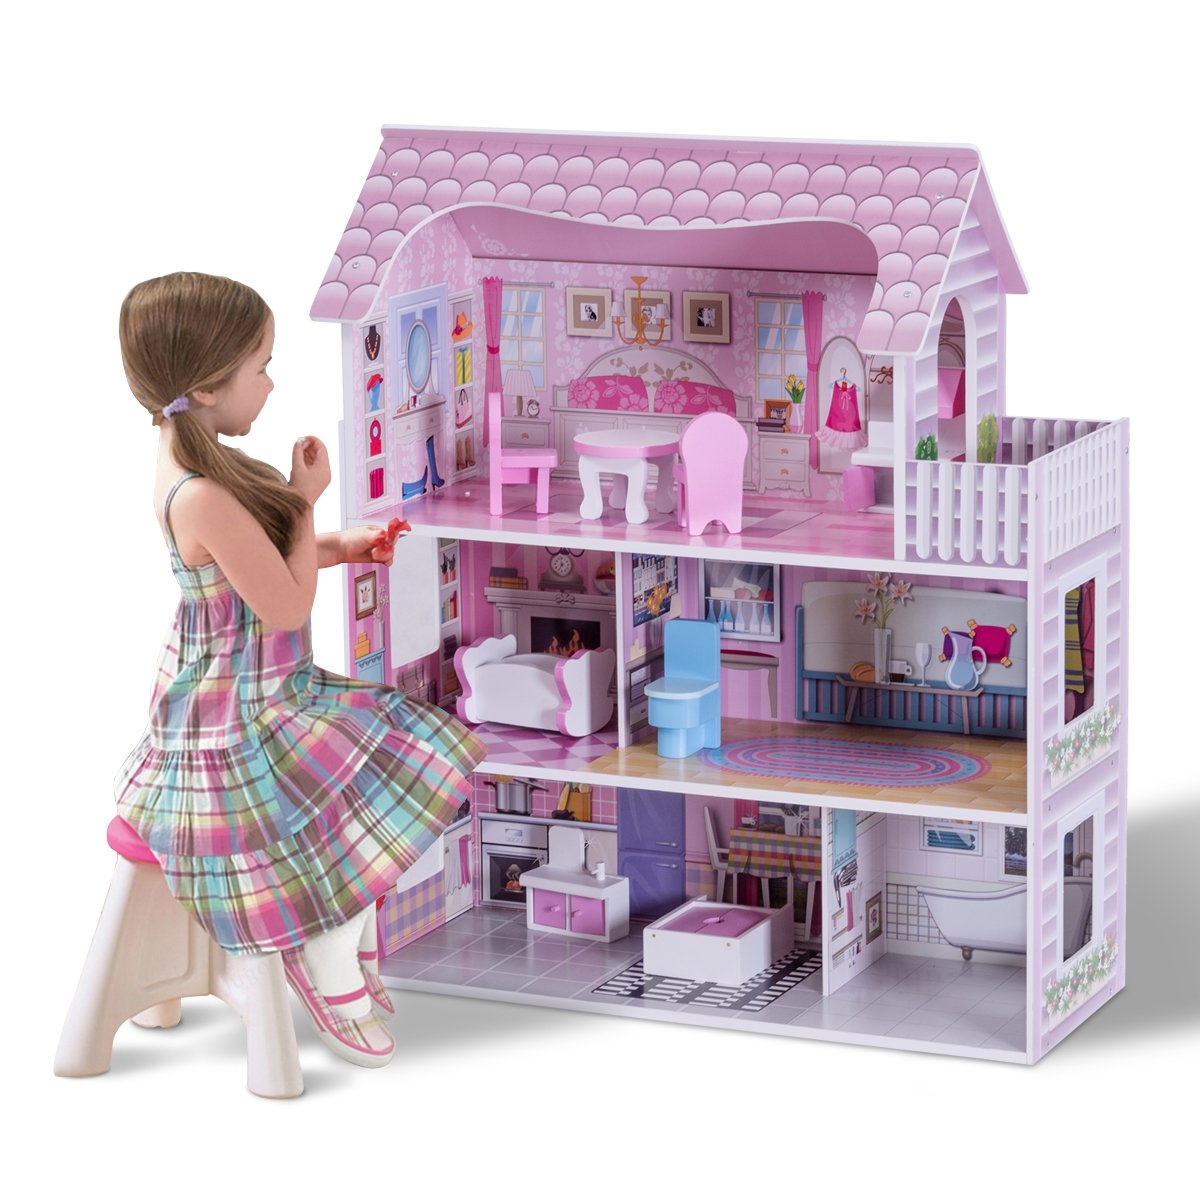 Costway Casa delle bambole in legno per bambina Casa giocattolo dei bambini 3 piani con mobili e accessori 61x26,5x71cm